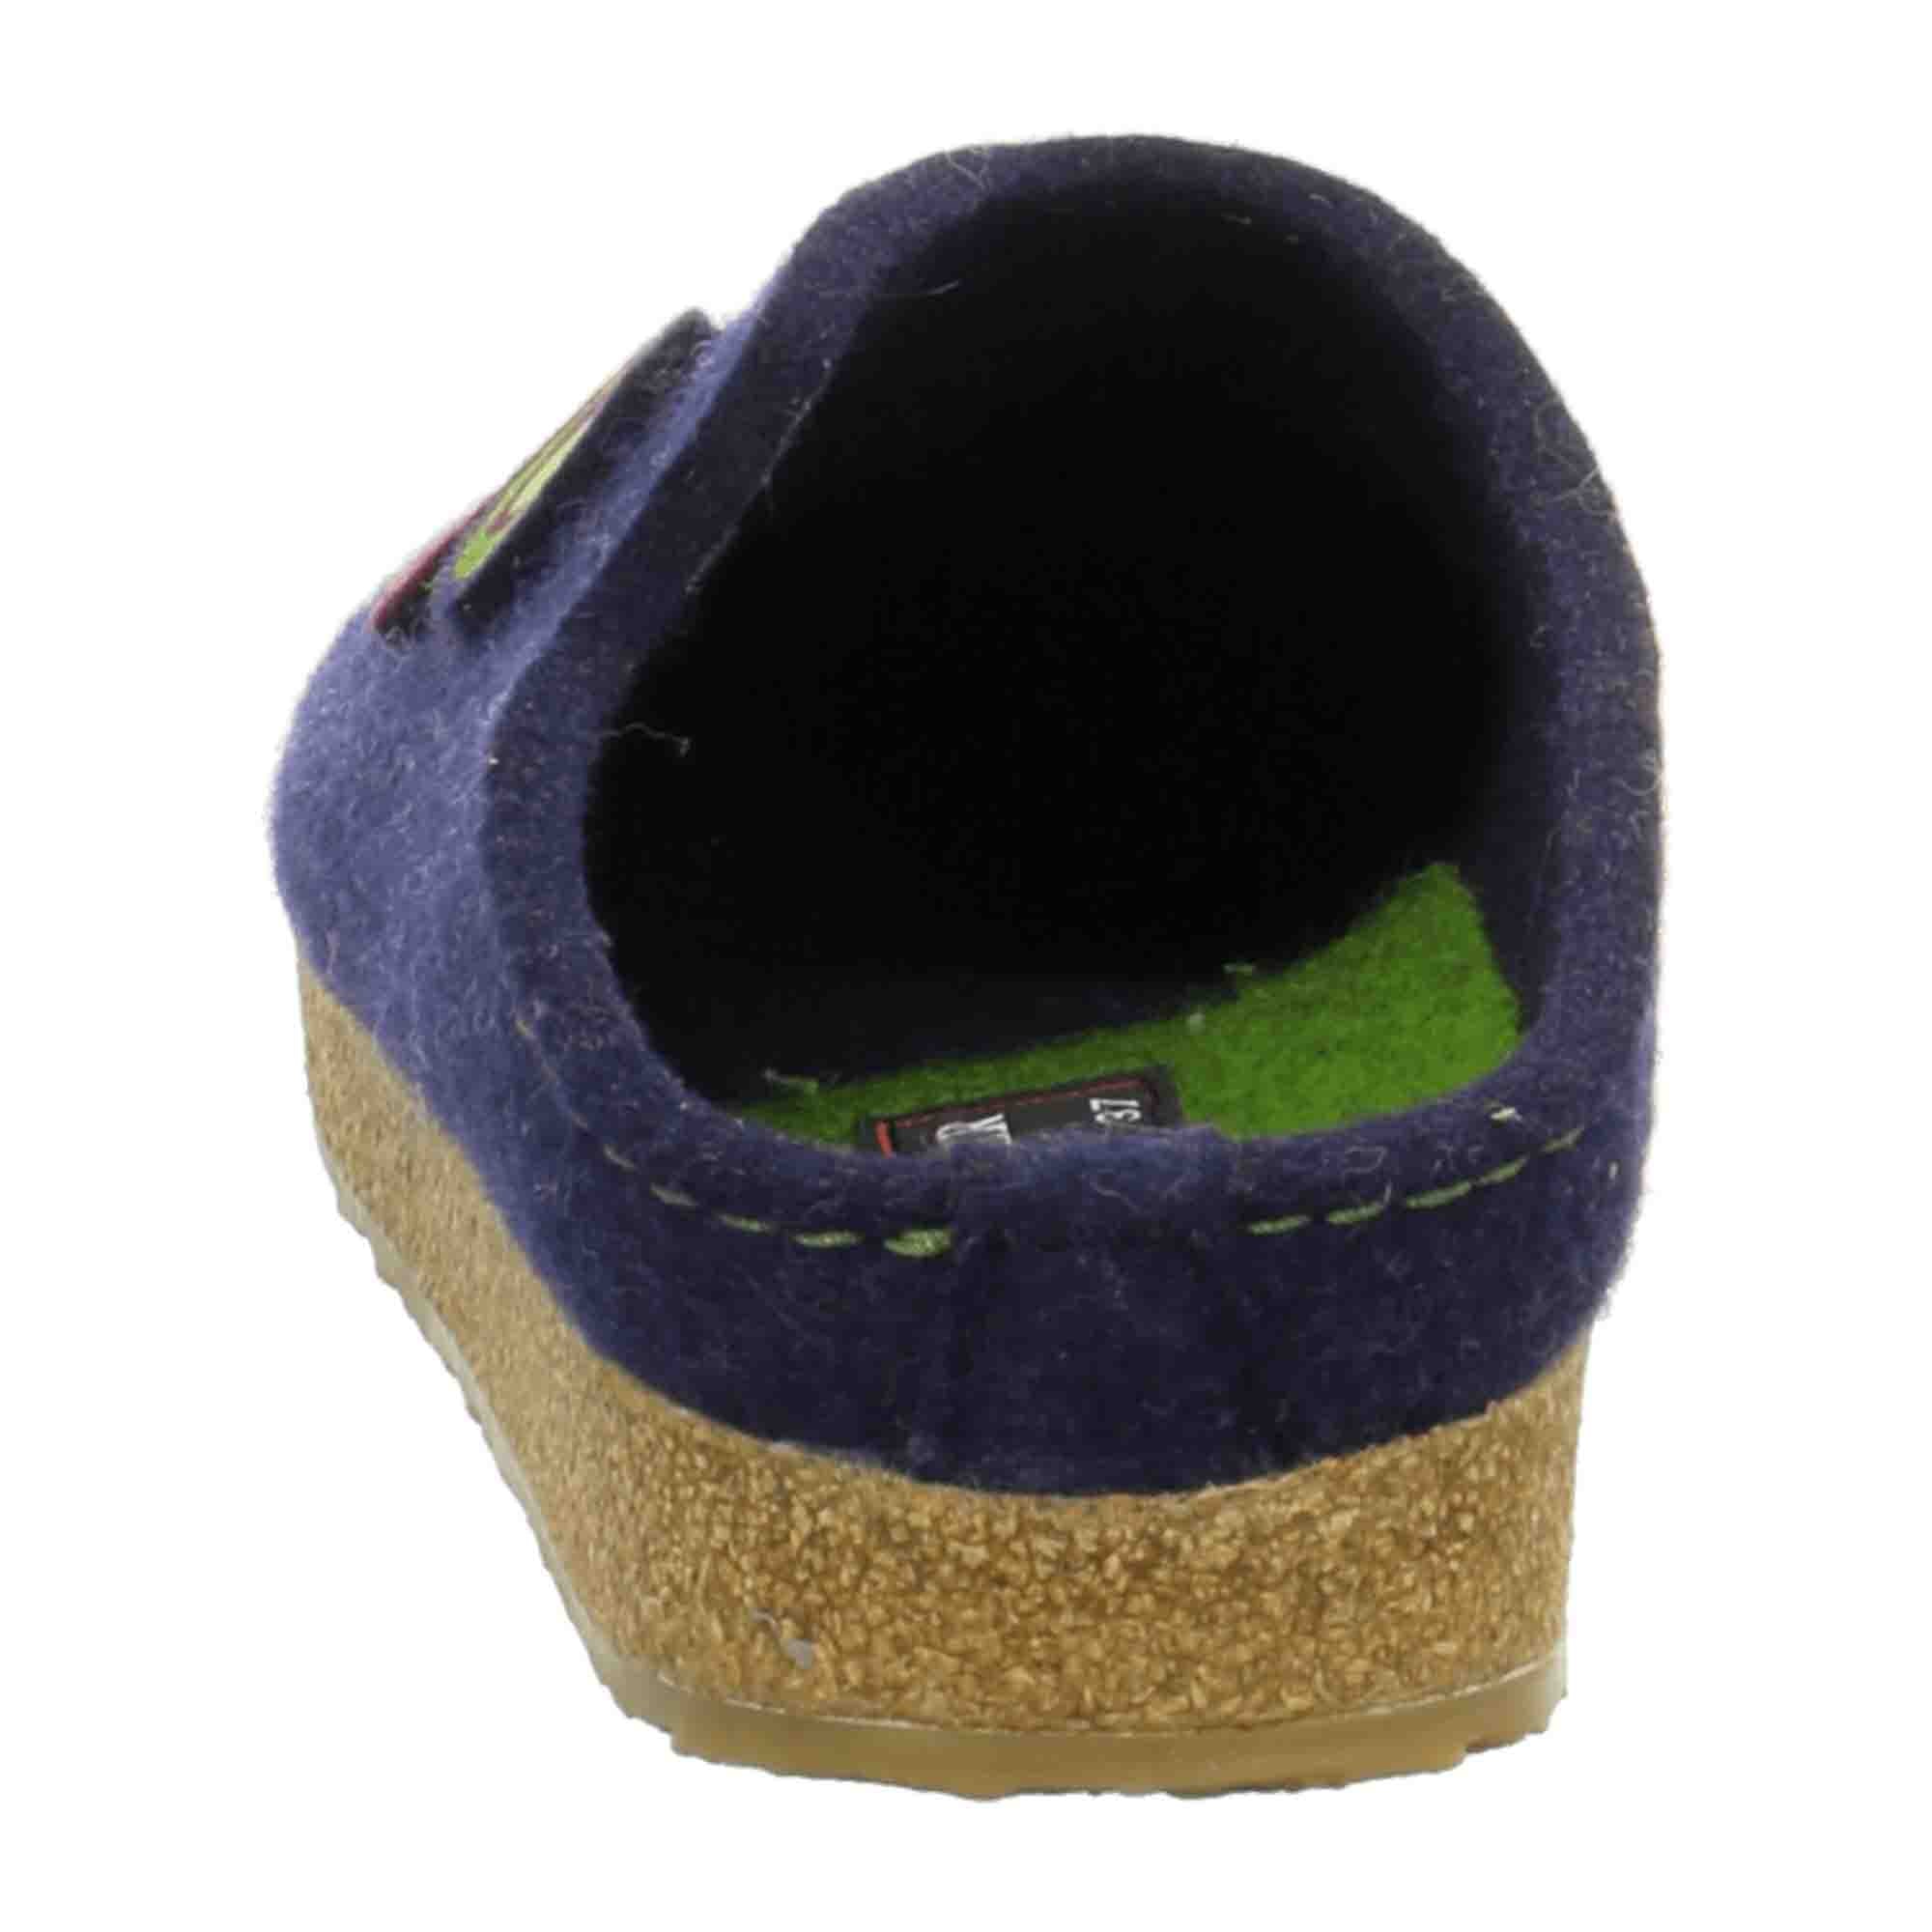 Haflinger KonzeptHW15 Women's Blue Slippers - Comfortable & Durable